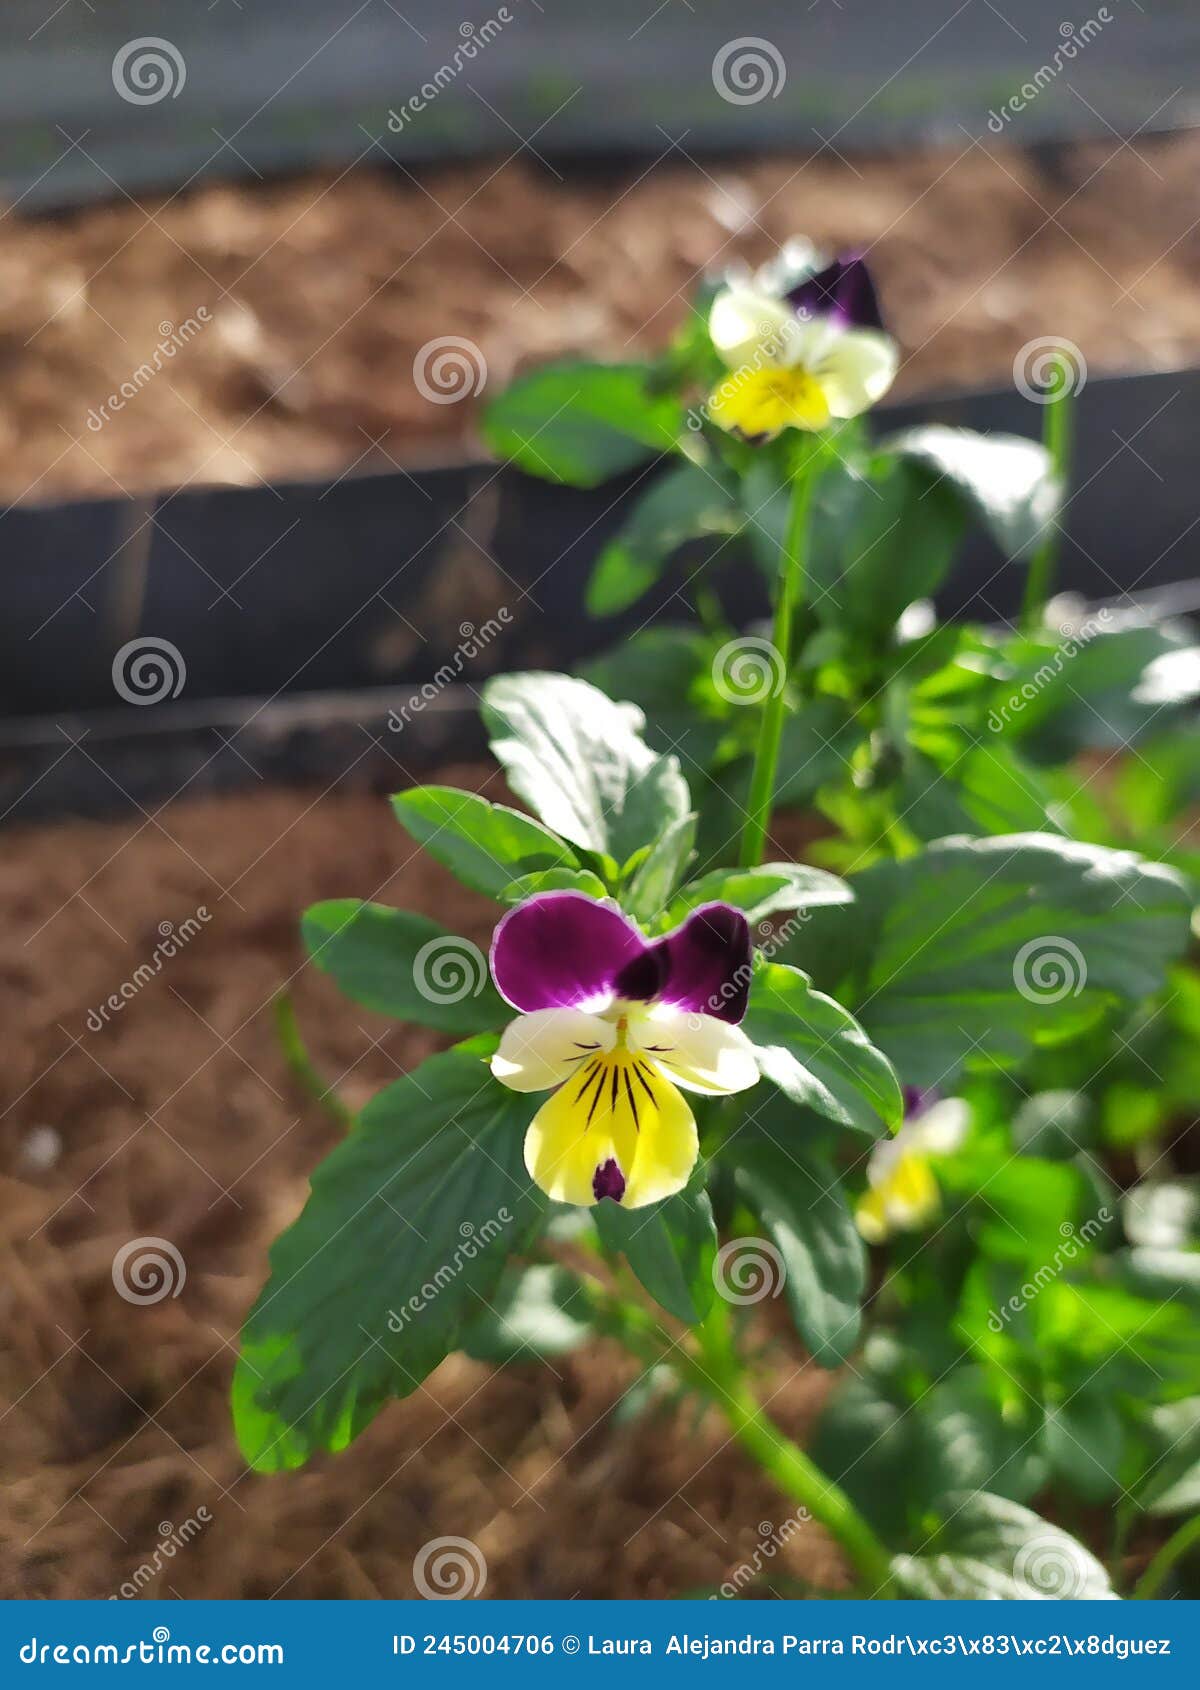 beautiful pansy flower in a vegetable patch. una bella flor viola en un huerto.